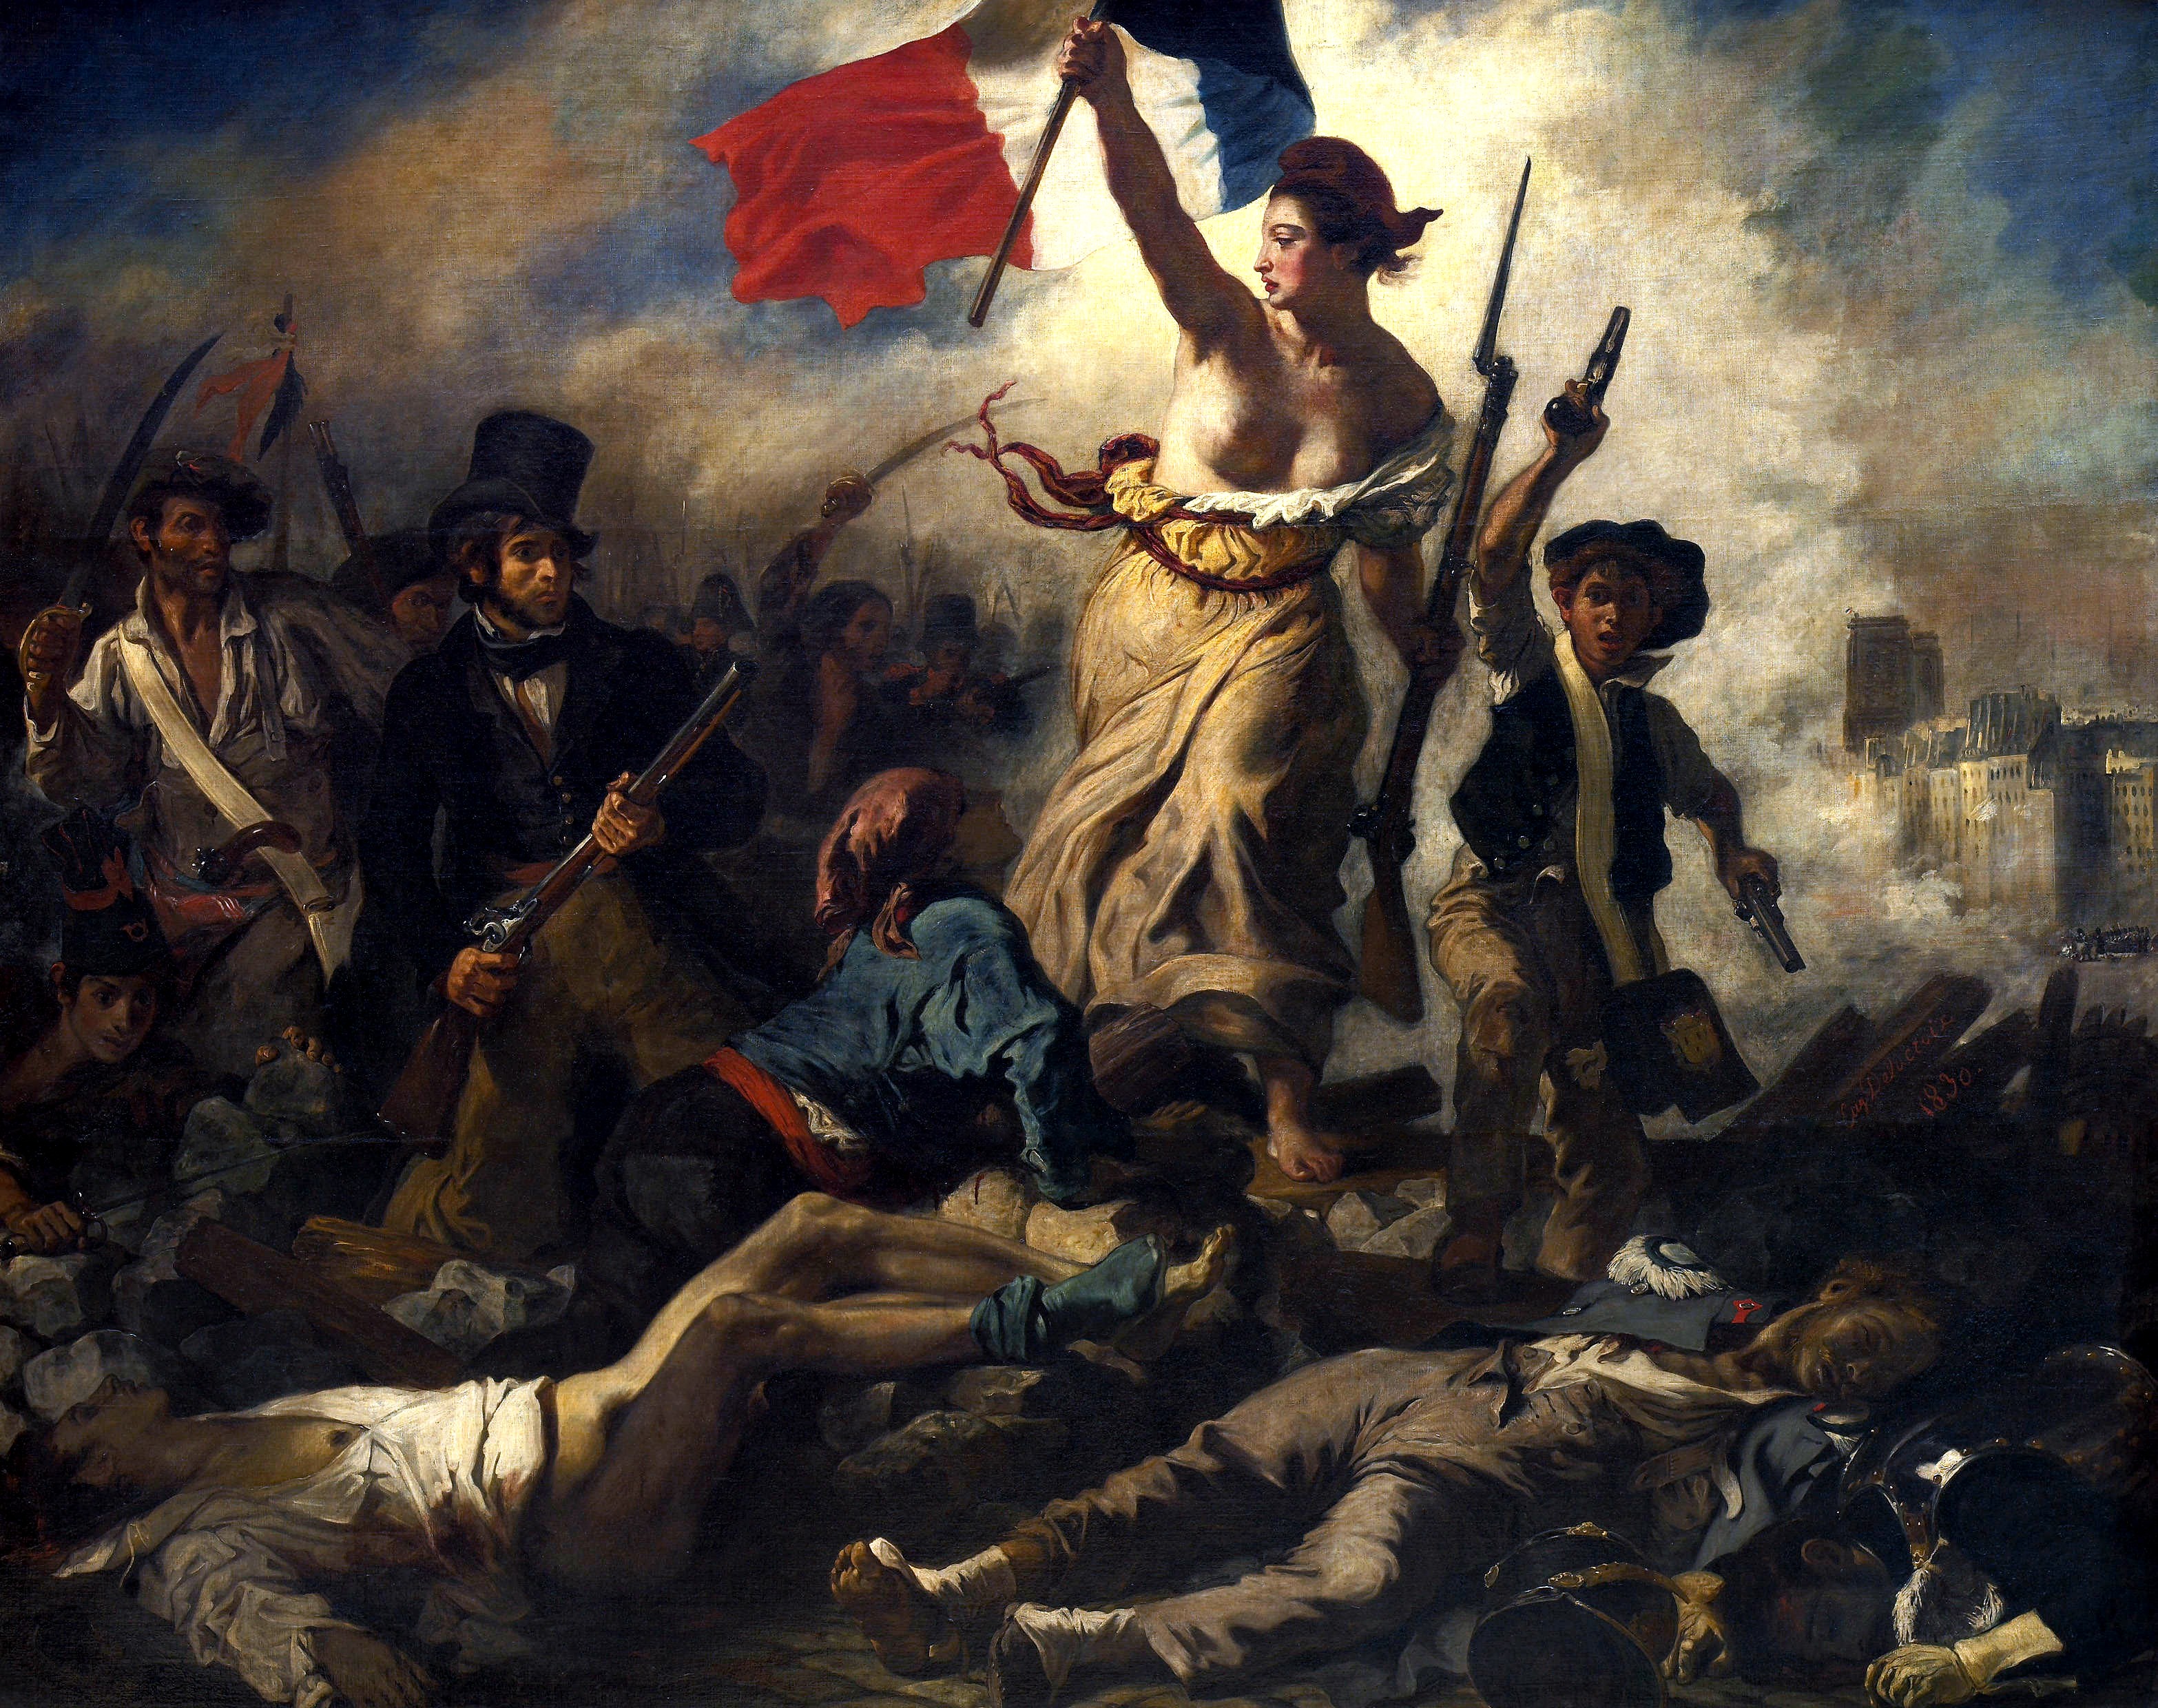 Eugène Delacroix, Liberty Leading the People, 28 July 1830 (1830, Oil on canvas, Louvre Museum, Paris).